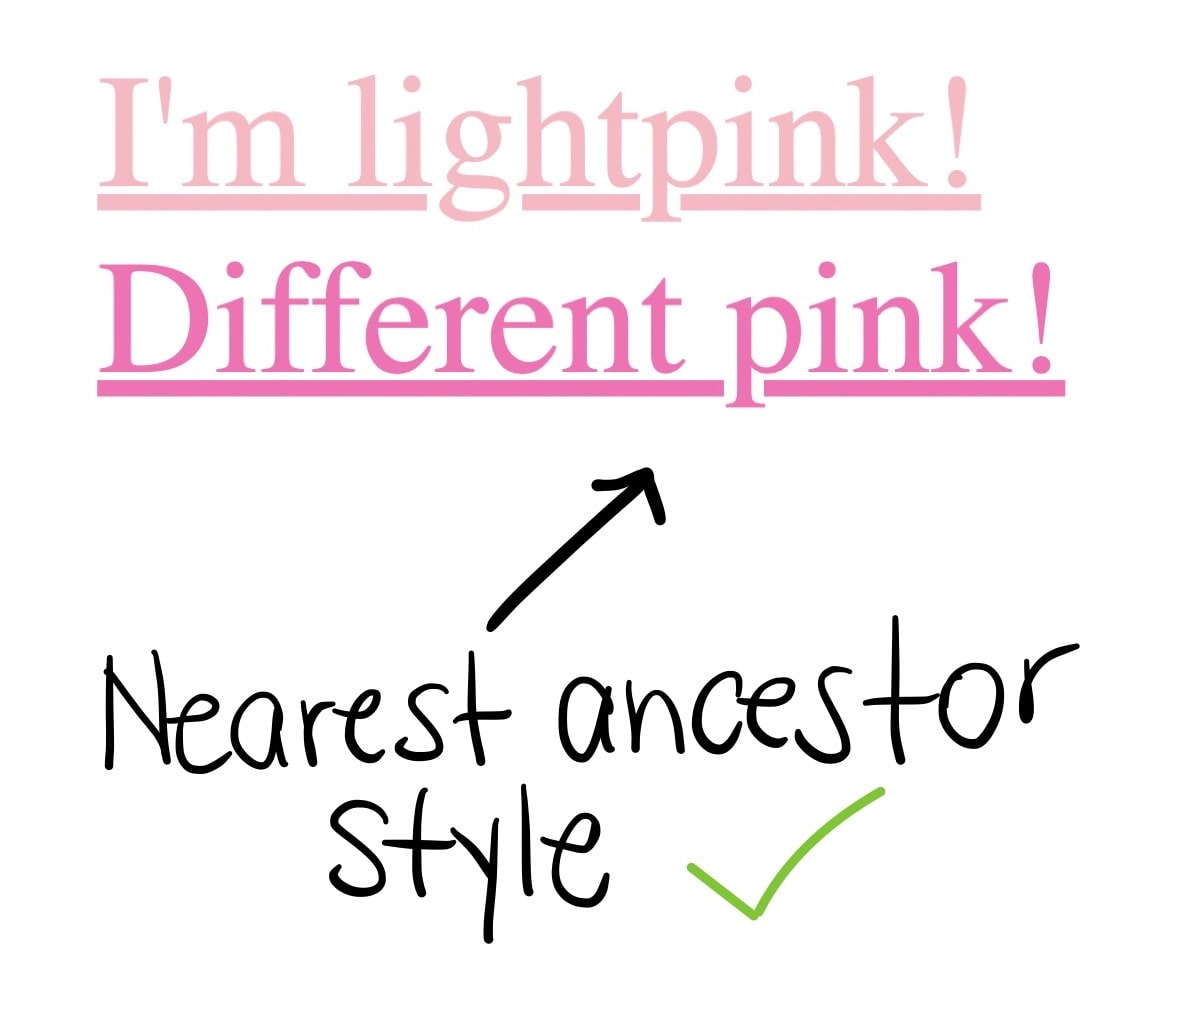 两个链接，第一个链接显示“我是浅粉色！”第二个链接显示为“Different pink”（不同的粉色），第二个链接是深粉色，位于链接文本最接近的祖先样式下方，并且旁边有一个绿色对勾标记。